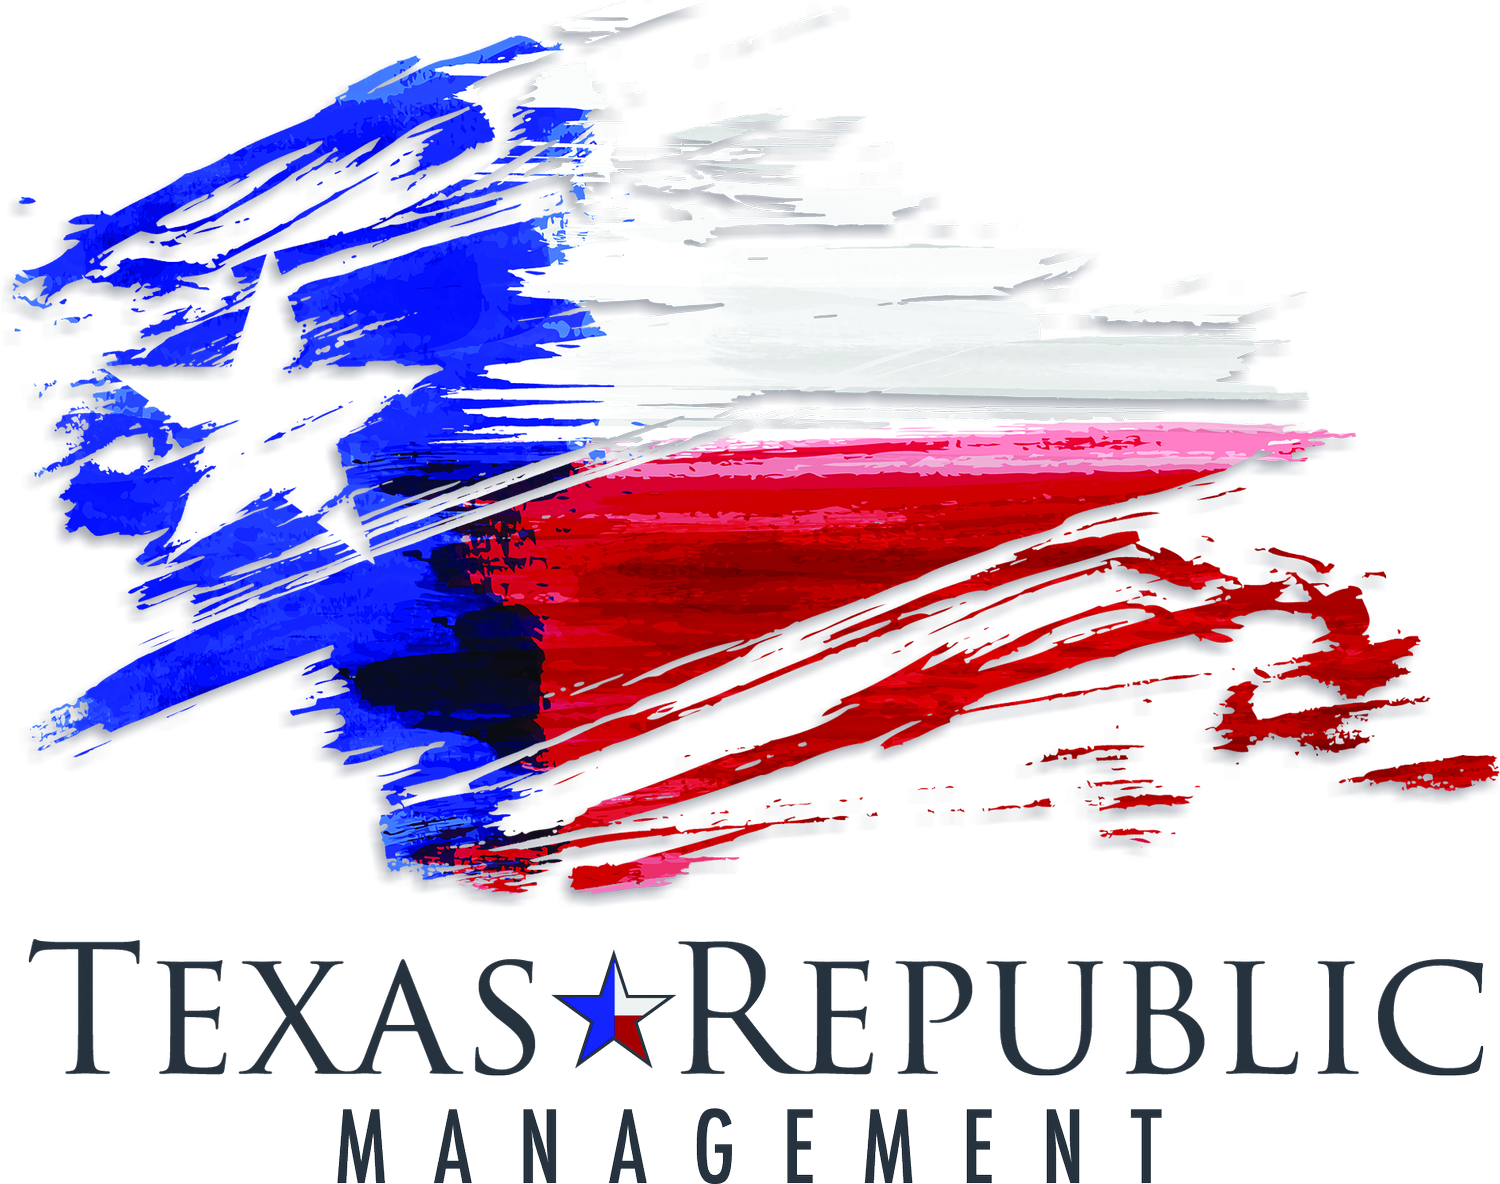 Texas Republic Management